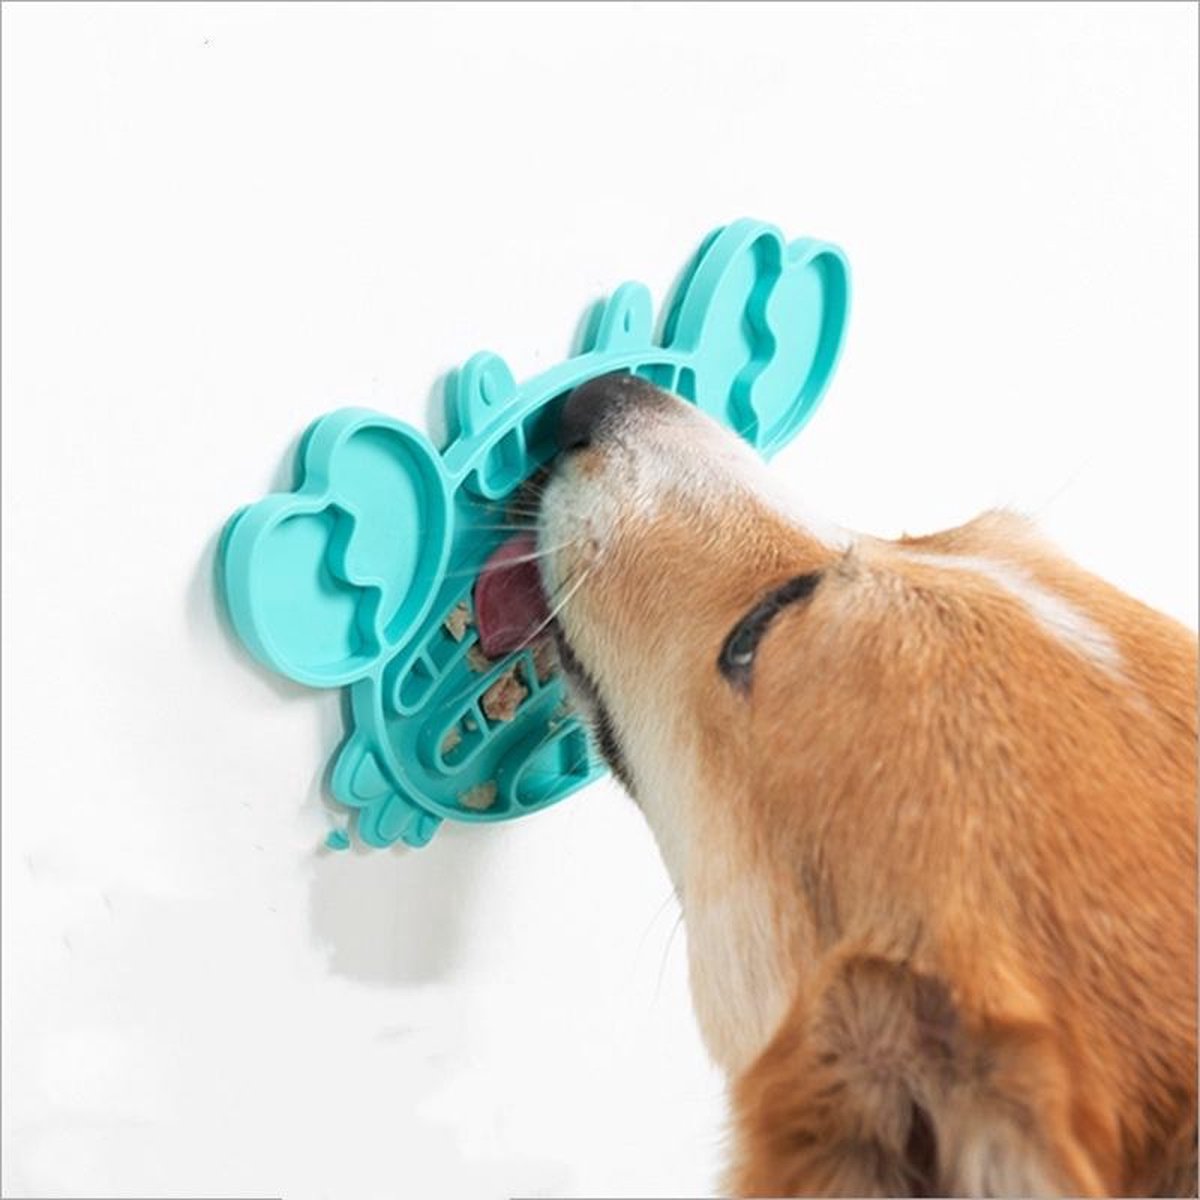 Honden en Katten Likmat Blauw - Intelligentie Speelgoed voor Hond en Kat - Anti Schrok Brokjes & Snoepjes Snuffel Mat - Dieren Speeltjes - Hondenspeeltjes - Kattenspeeltjes - Hondenspeelgoe